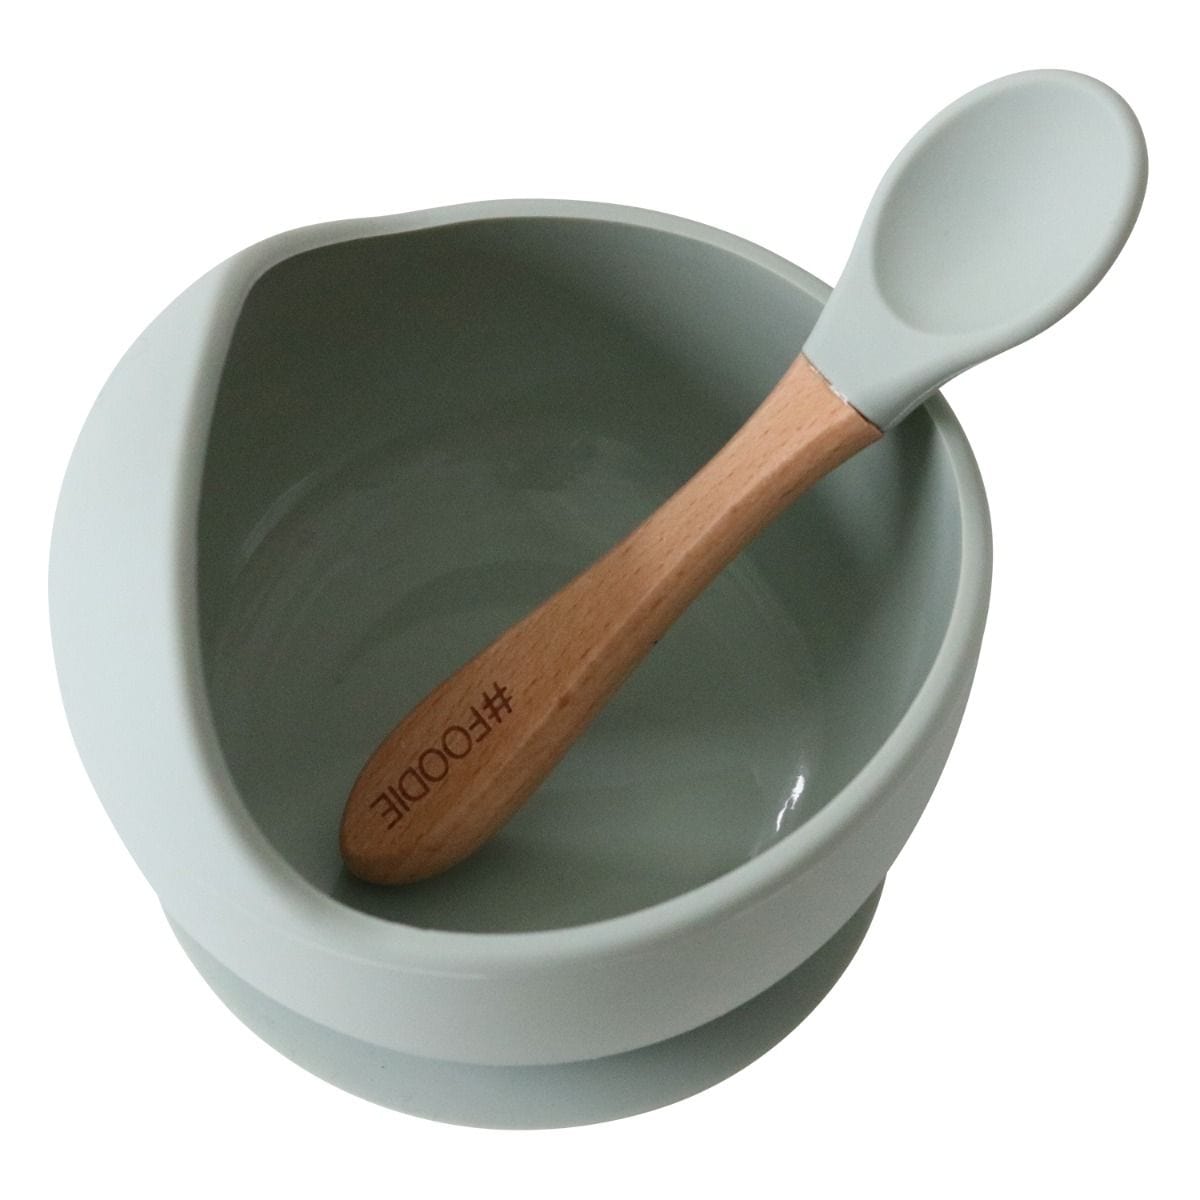 Glitter & Spice silicone bowl set Glitter & Spice Silicone Bowl & Spoon Set - Sage